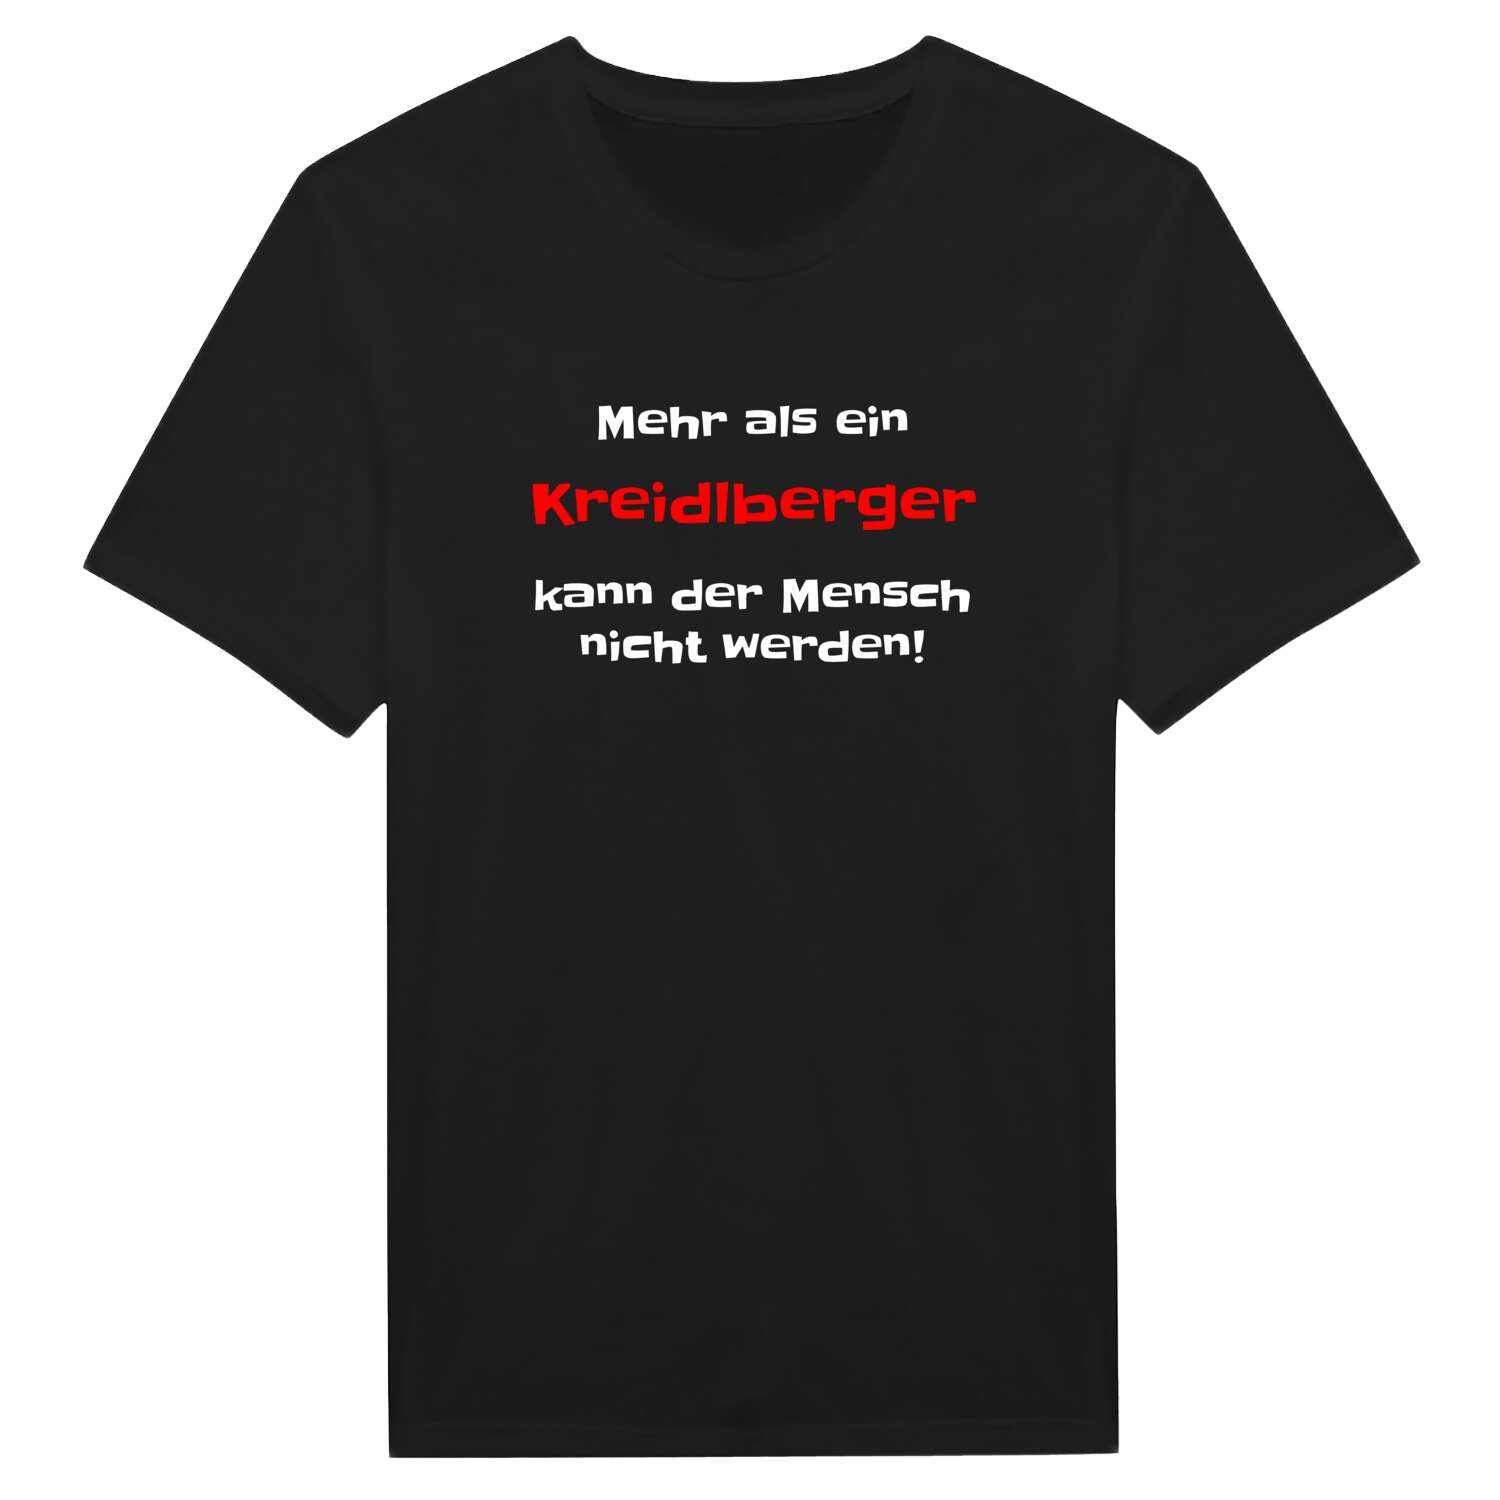 Kreidlberg T-Shirt »Mehr als ein«